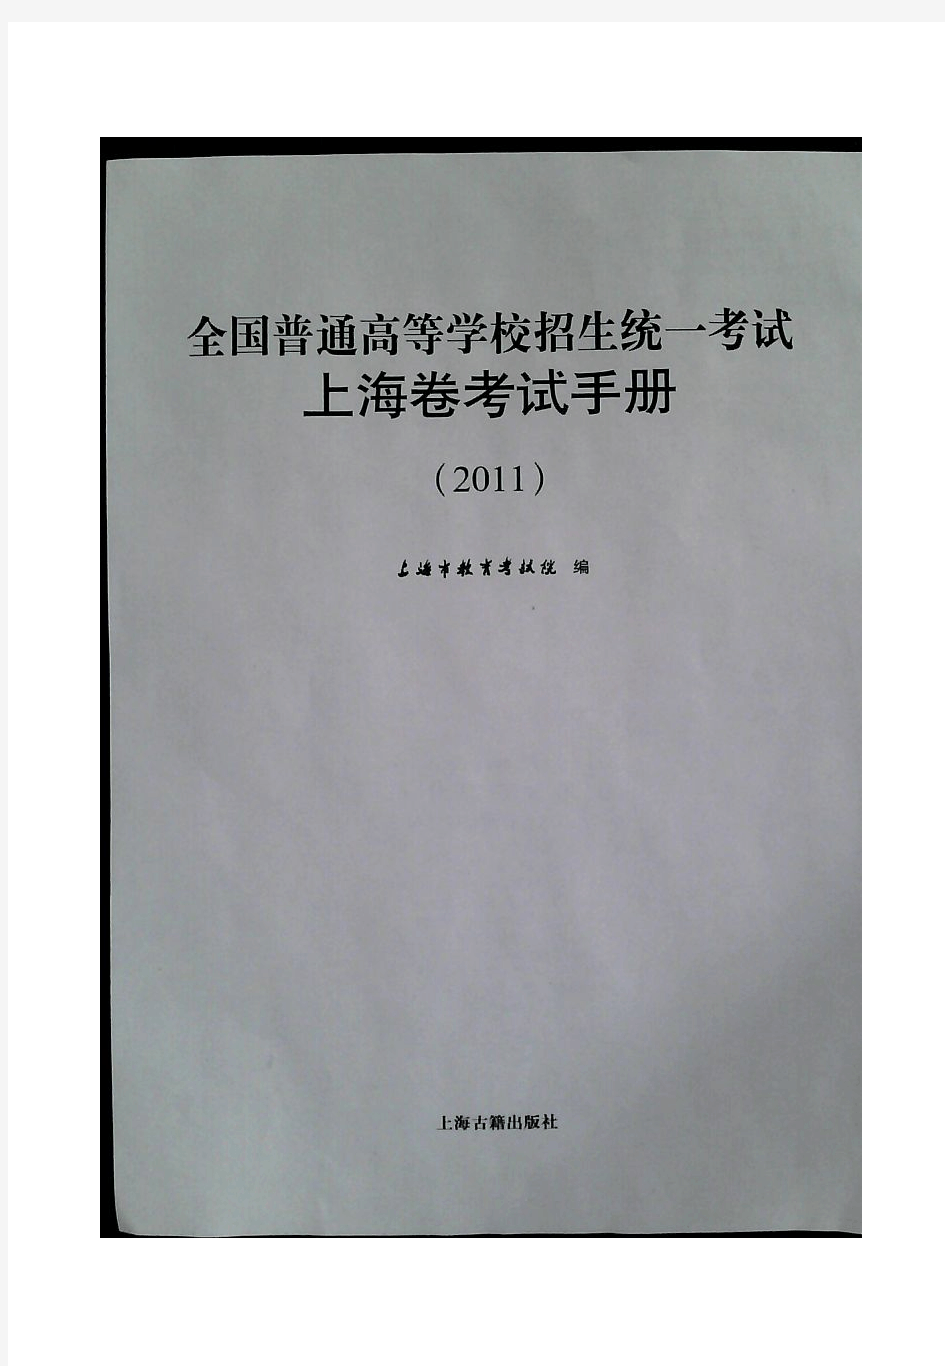 2011年上海高考考纲(完整pdf版)生物